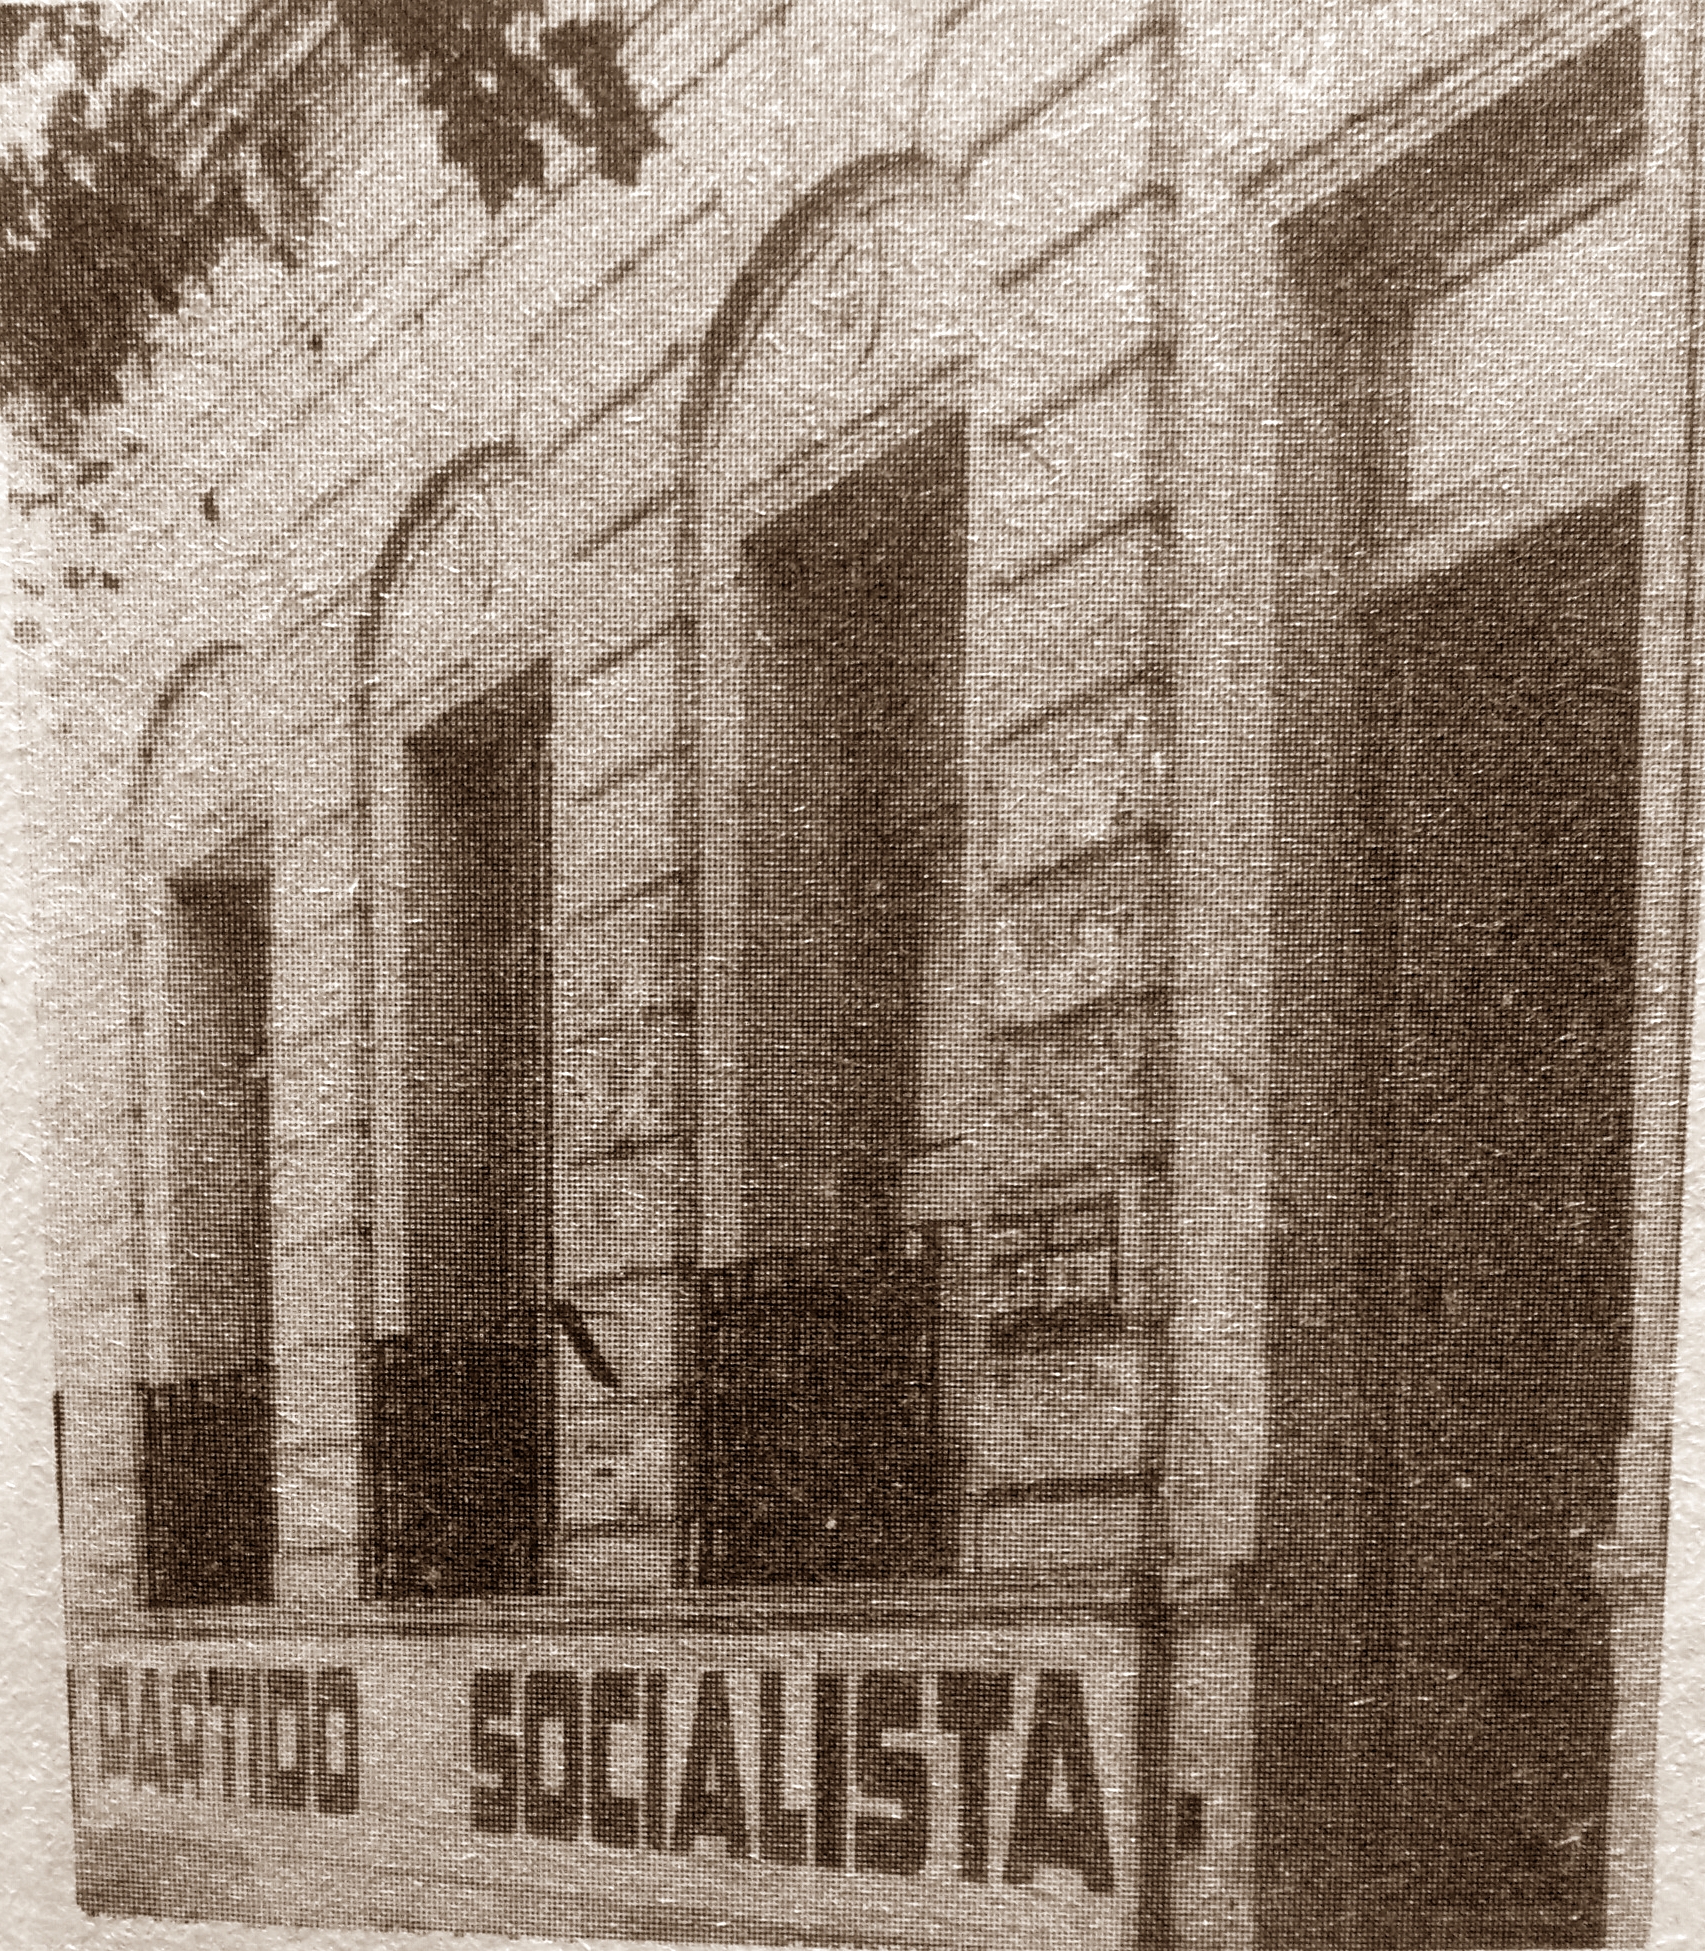 Hace 110 años, se fundó el Centro Socialista “Dr. Juan B. Justo”, de Chivilcoy